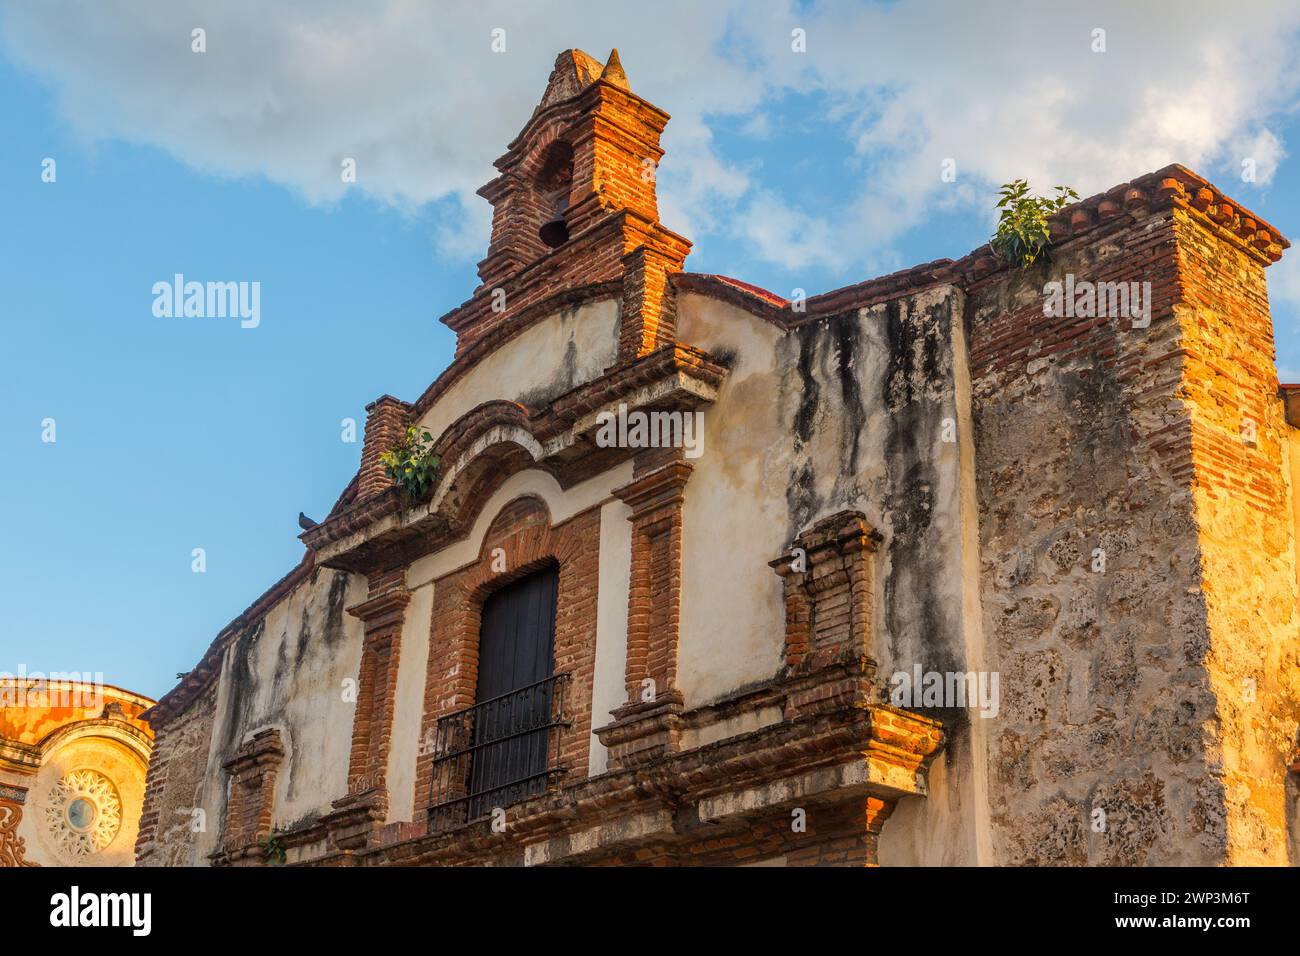 Cappella Dominicana del terzo ordine nella vecchia città coloniale di Santo Domingo, Repubblica Dominicana. Fu costruito negli anni '1700 come parte dell'Impe Foto Stock